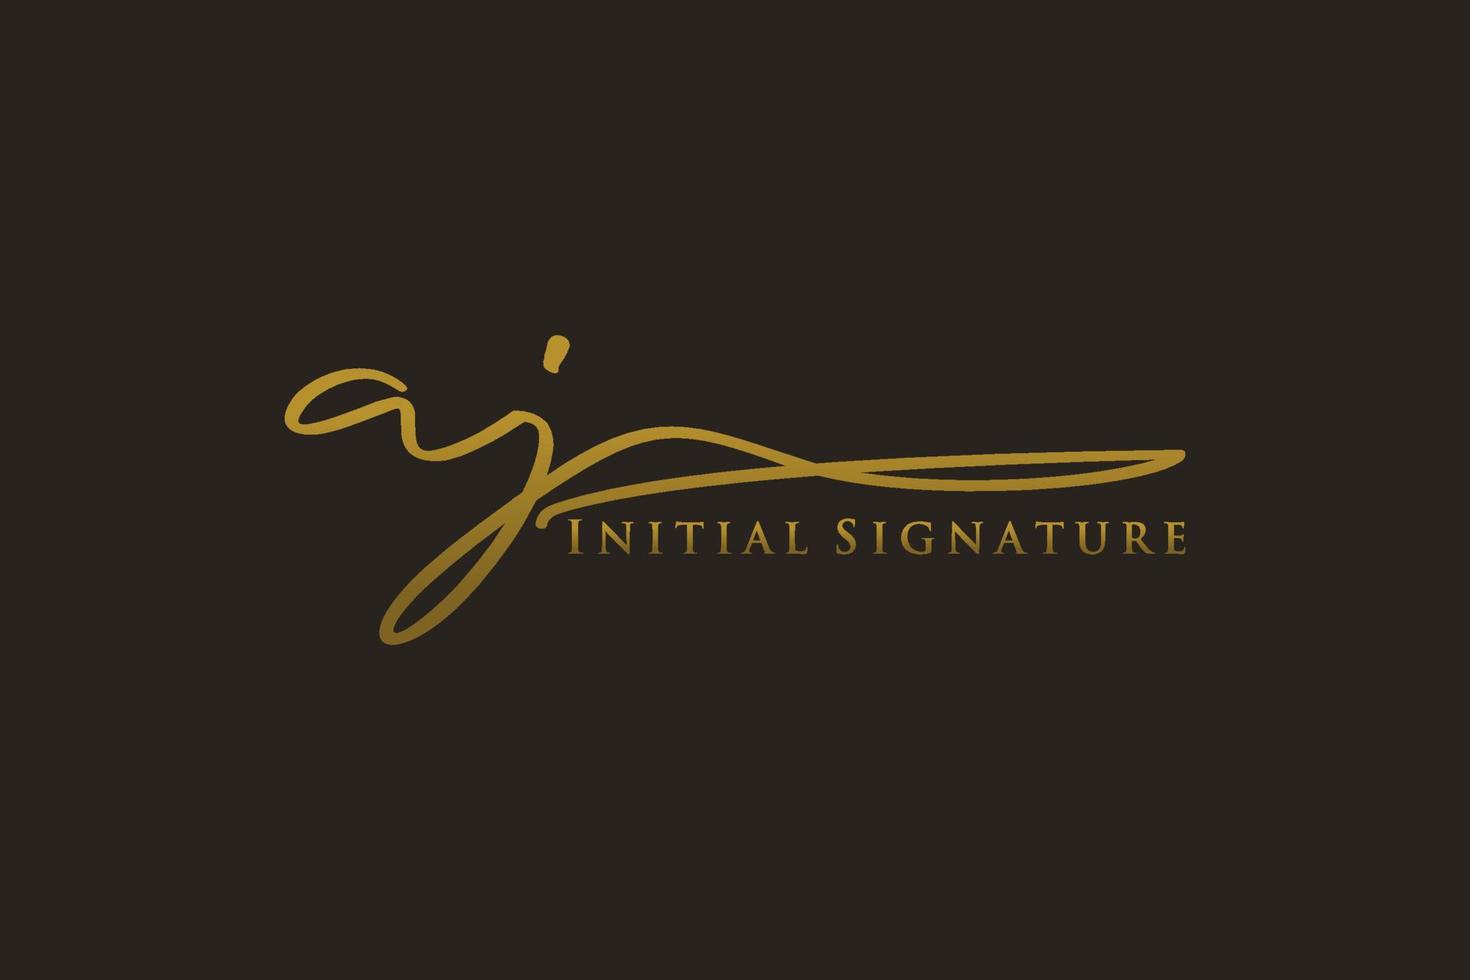 plantilla de logotipo de firma de letra aj inicial logotipo de diseño elegante. ilustración de vector de letras de caligrafía dibujada a mano.